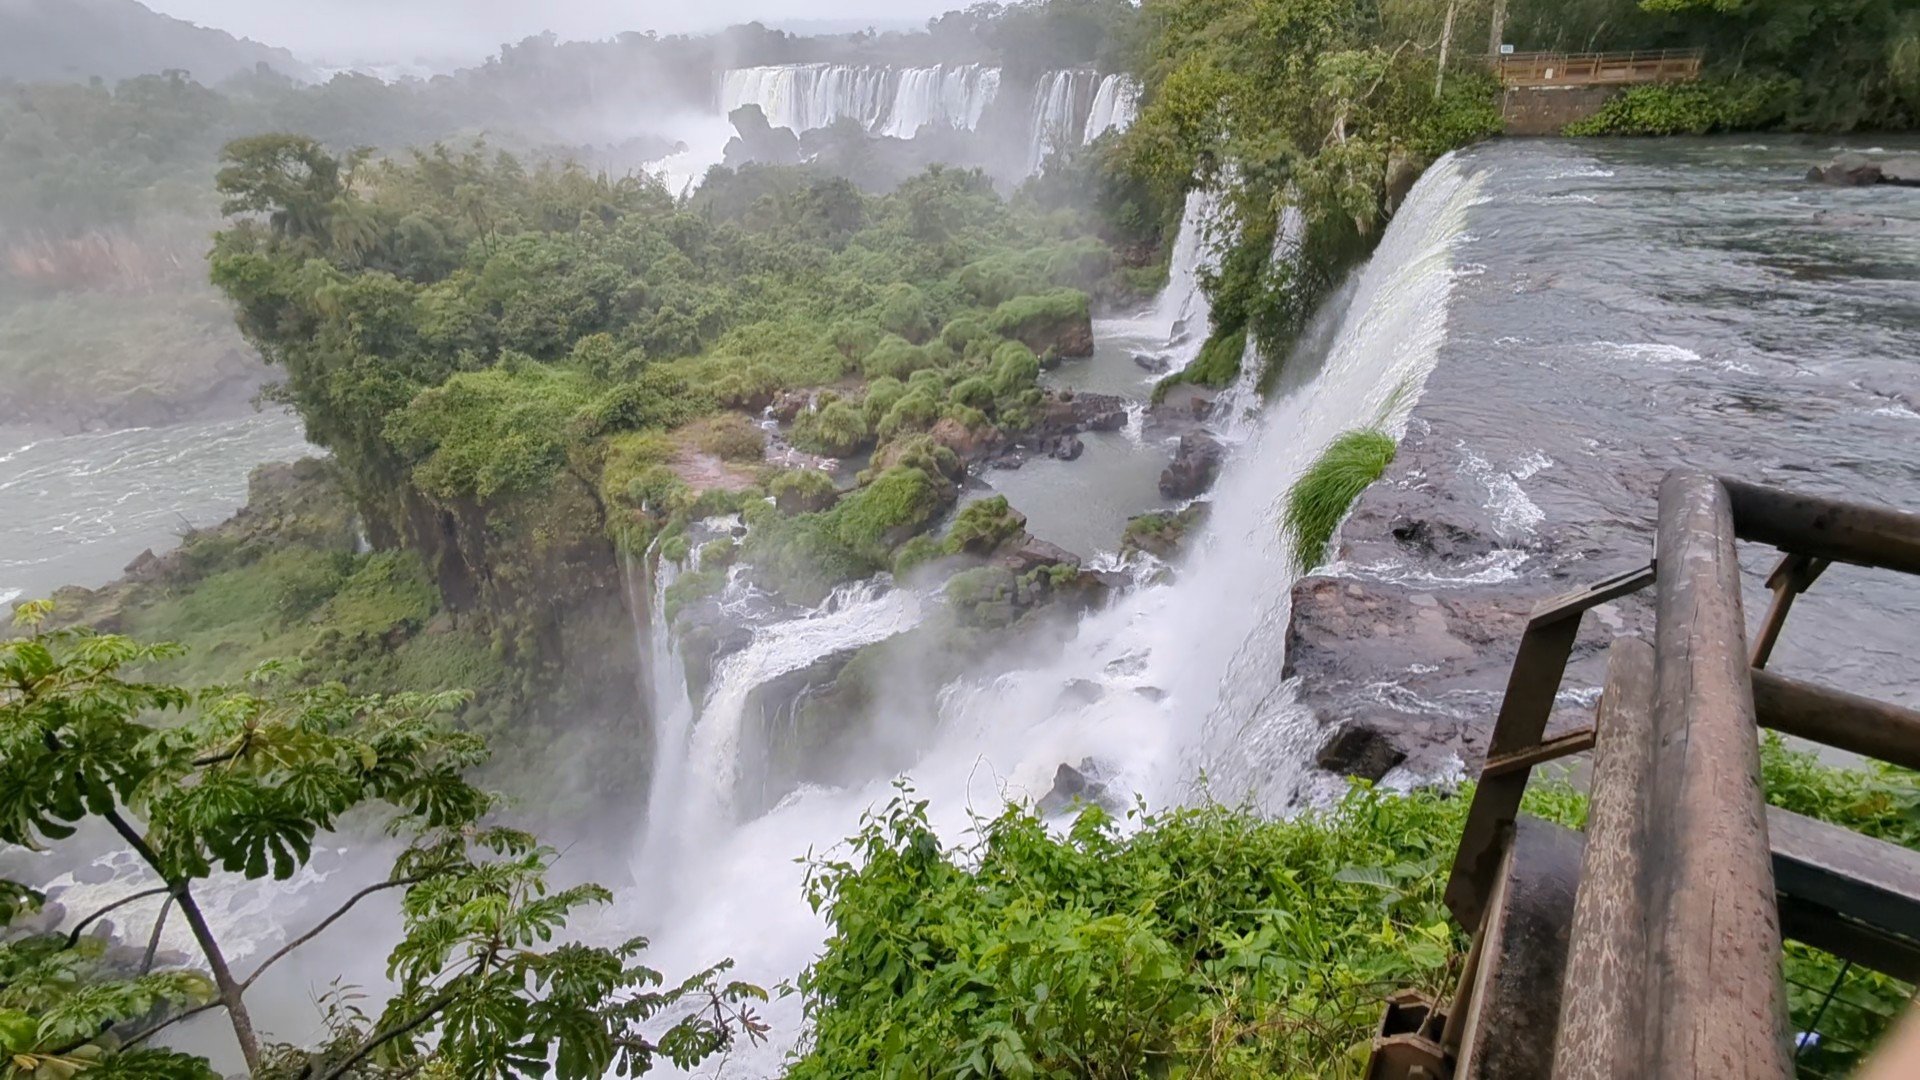 Foz do Iguaçu & Iguazú Falls • One Sick Dream